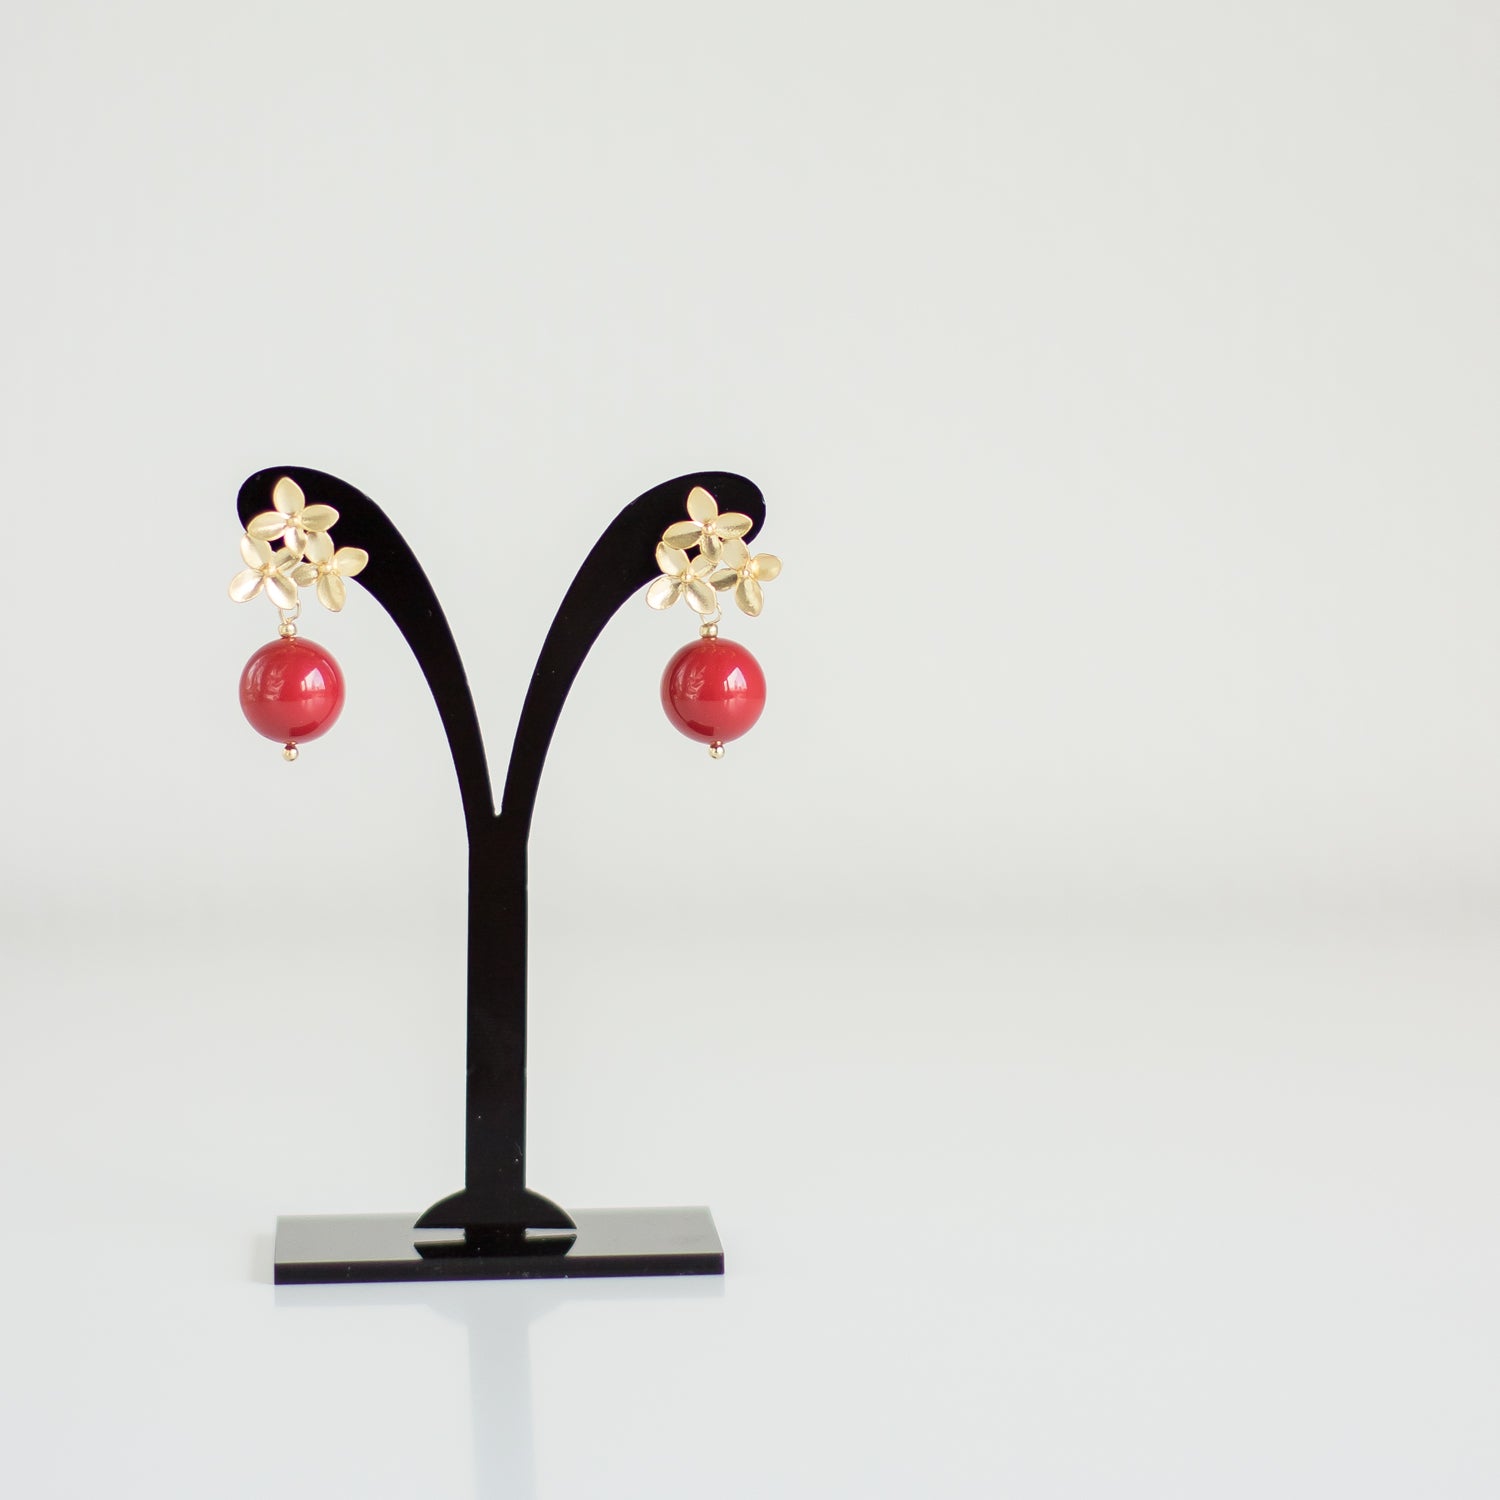 Small red Swarovski pearl earrings. Gold floral stud earrings. Elegant pearl accessories. Casual drop pearl earrings.